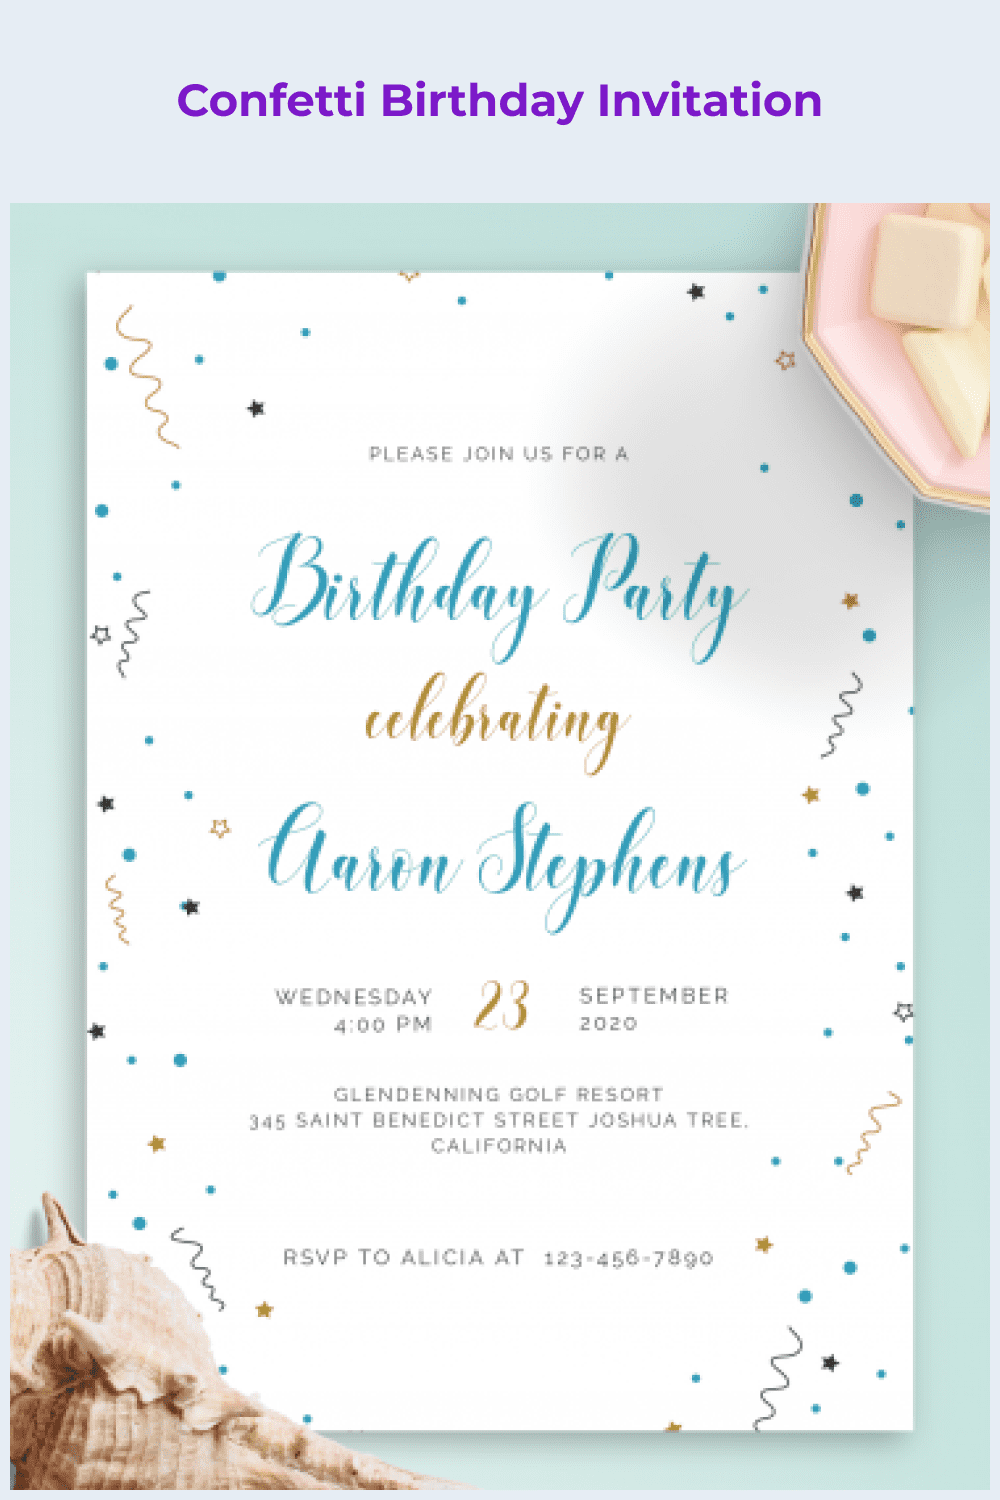 Confetti birthday invitation.